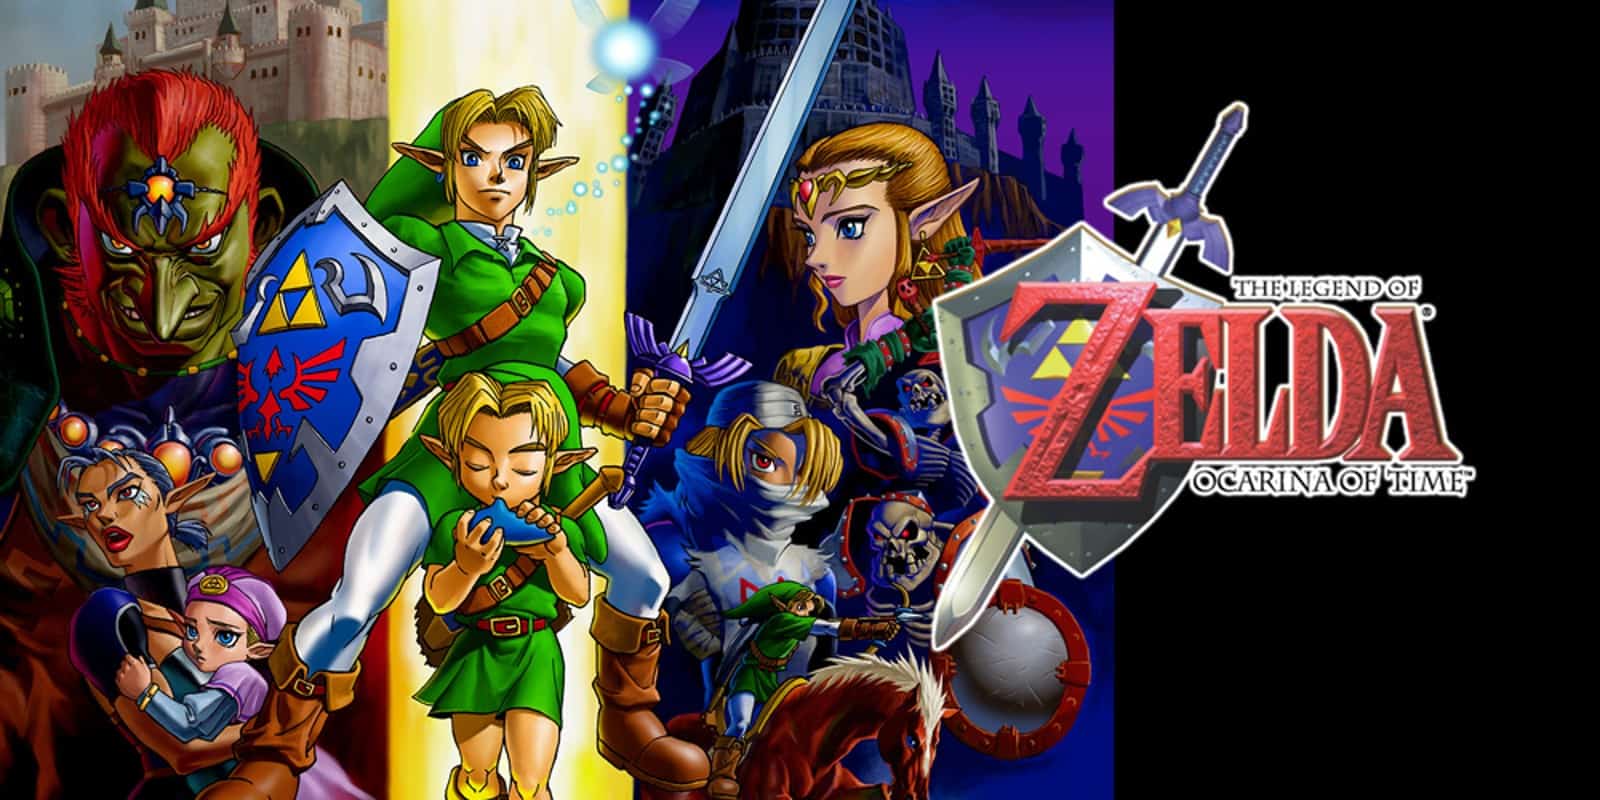 Zelda OoT multiplayer is really amazing! : r/ZeldaOoT